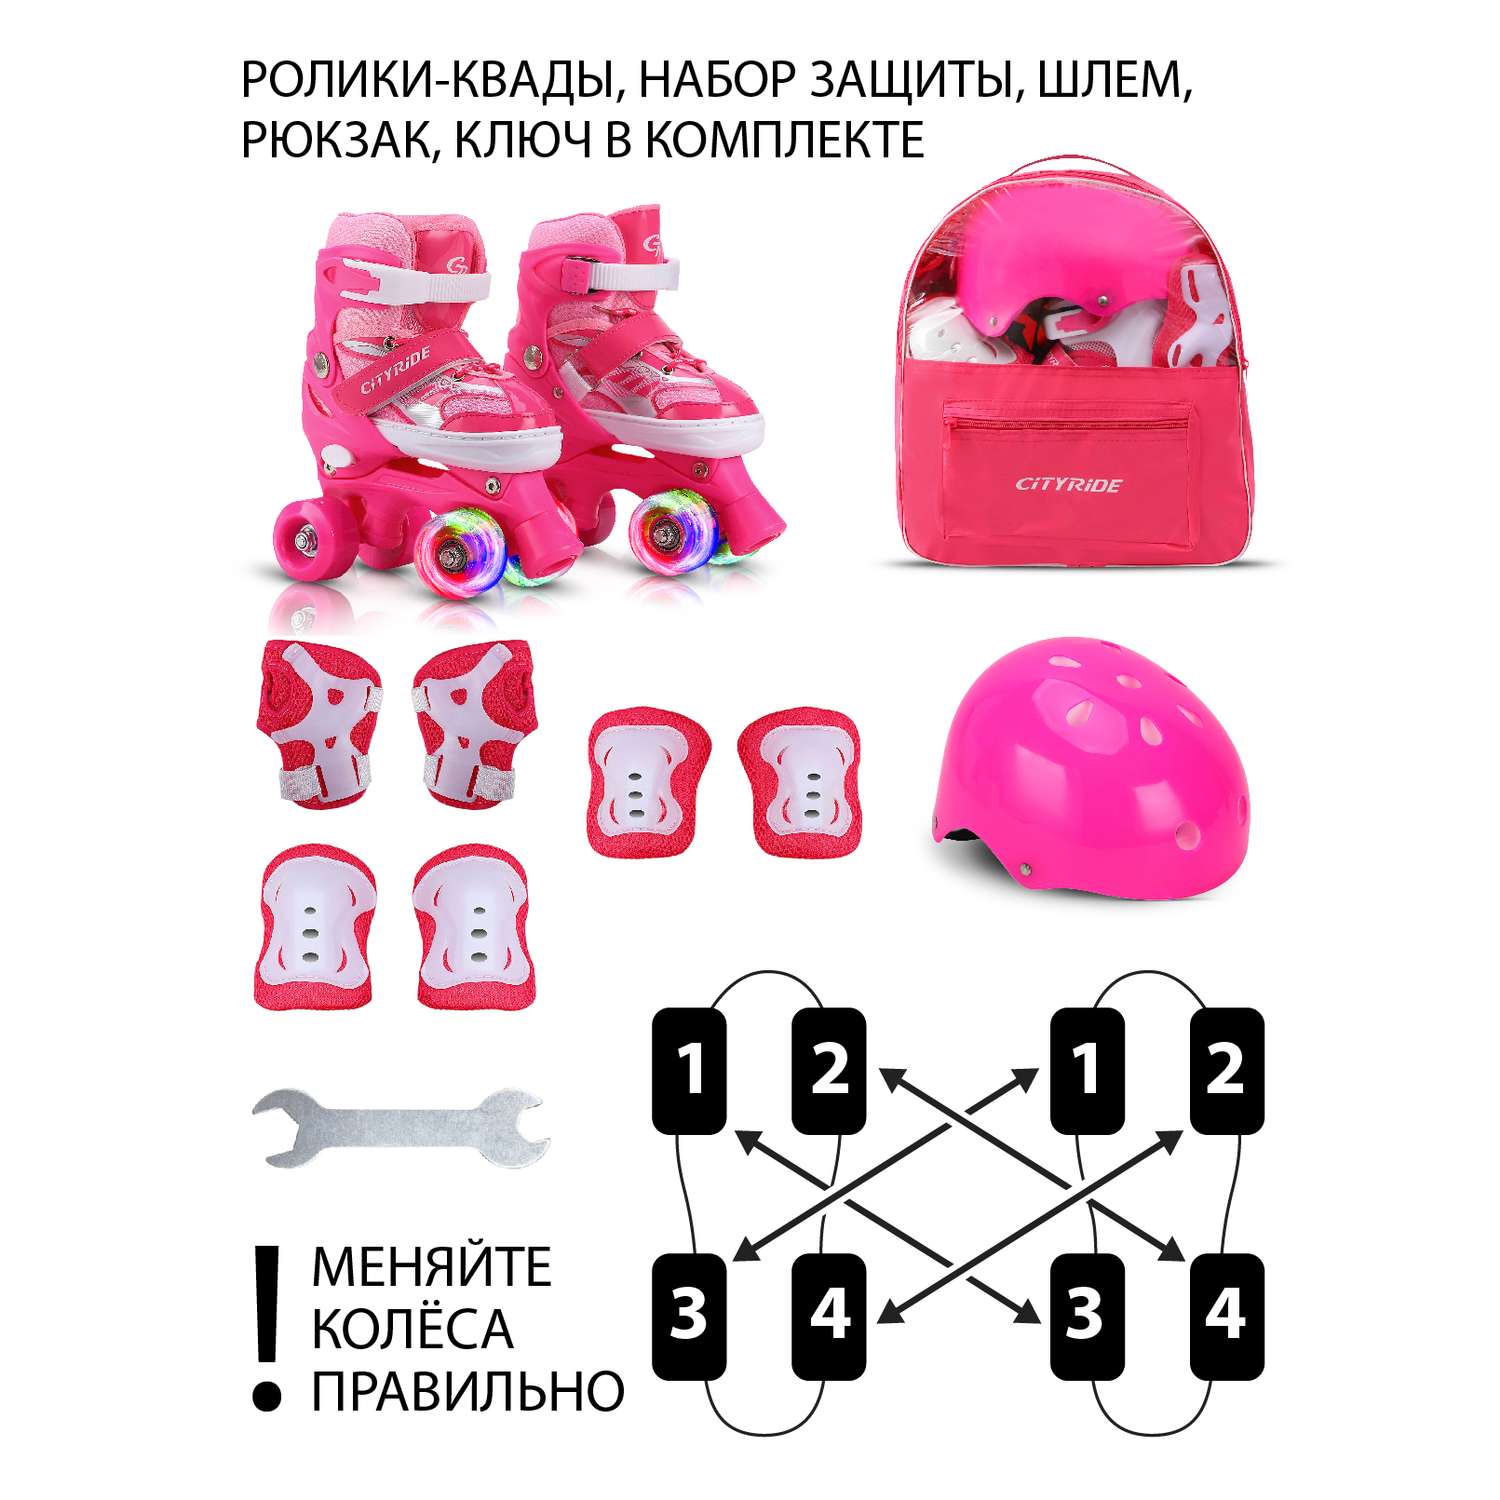 Роликовые коньки - Квады CITYRIDE Комплект ролики-квады защита шлем передние колеса со светом S 29-33 цвет розовый в сумке - фото 7